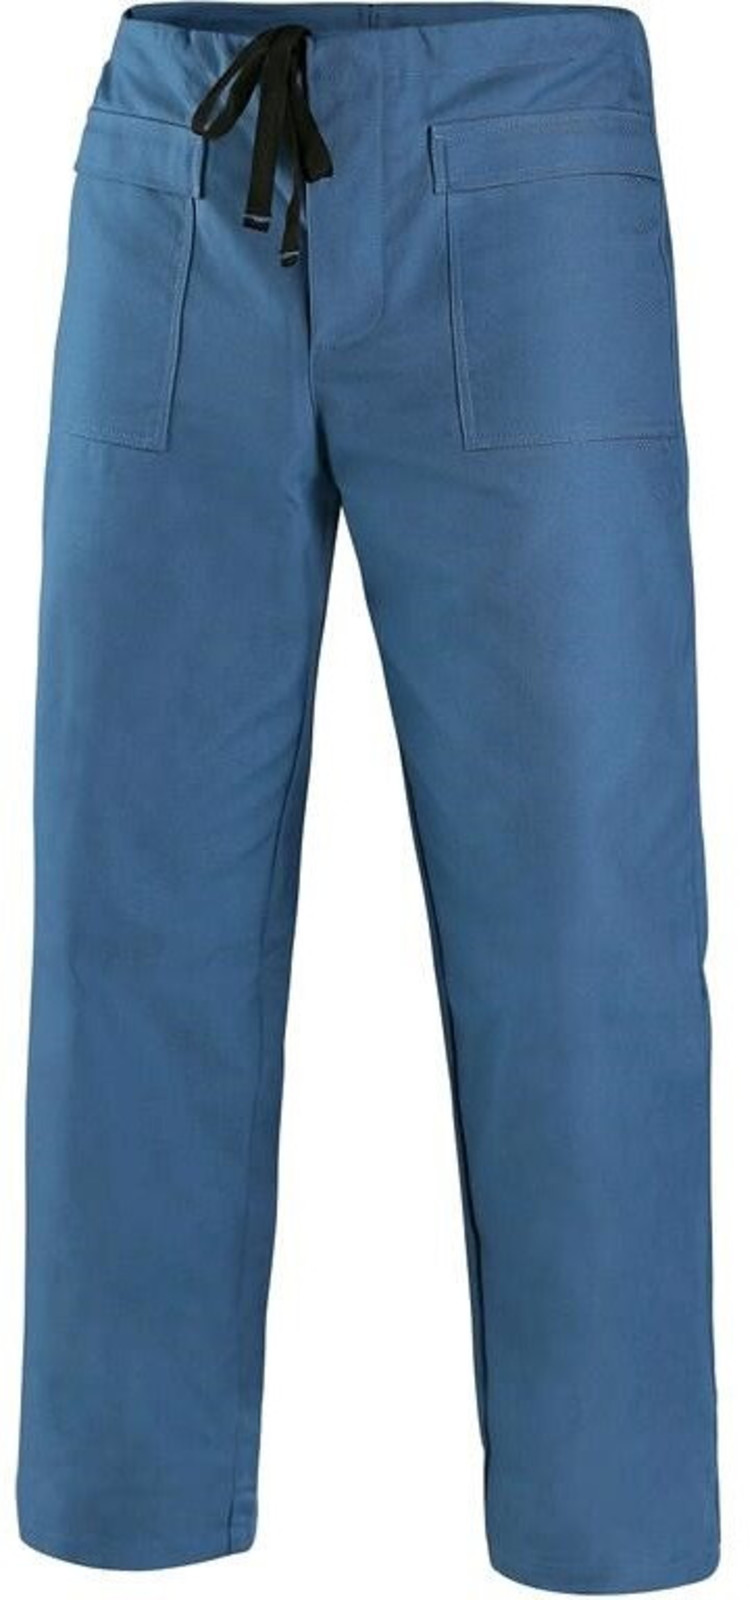 Kyselinovzdorné nohavice Chemik - veľkosť: 50, farba: modrá